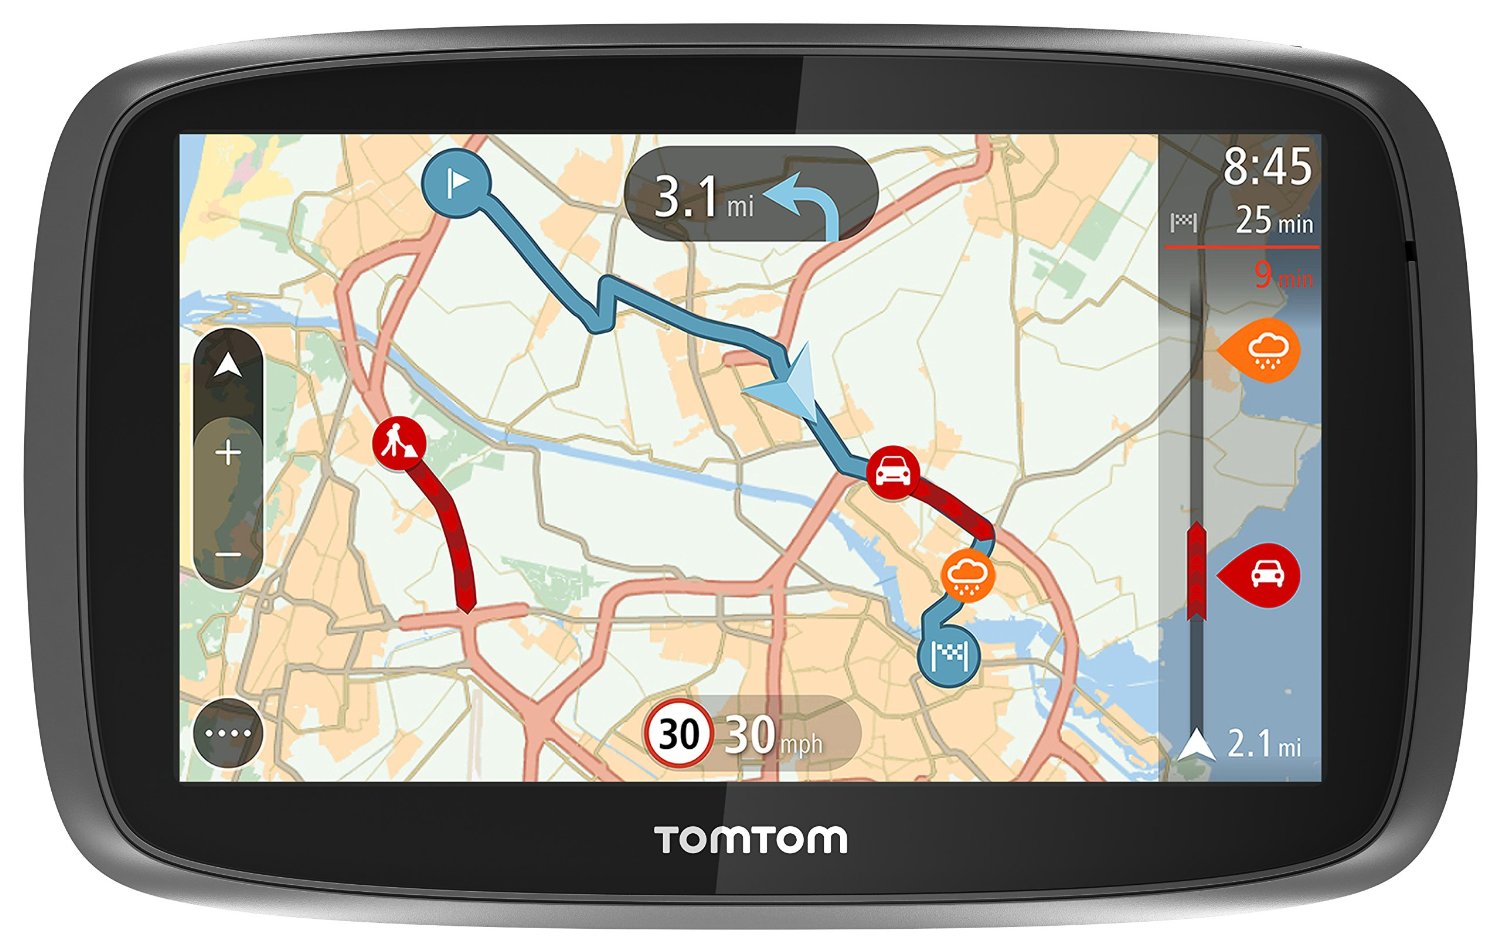 Sistem de navigatie TomTom Trucker 5000, Ecran 5", Actualizari gratuite alte hartilor, Acoperire pentru camioane